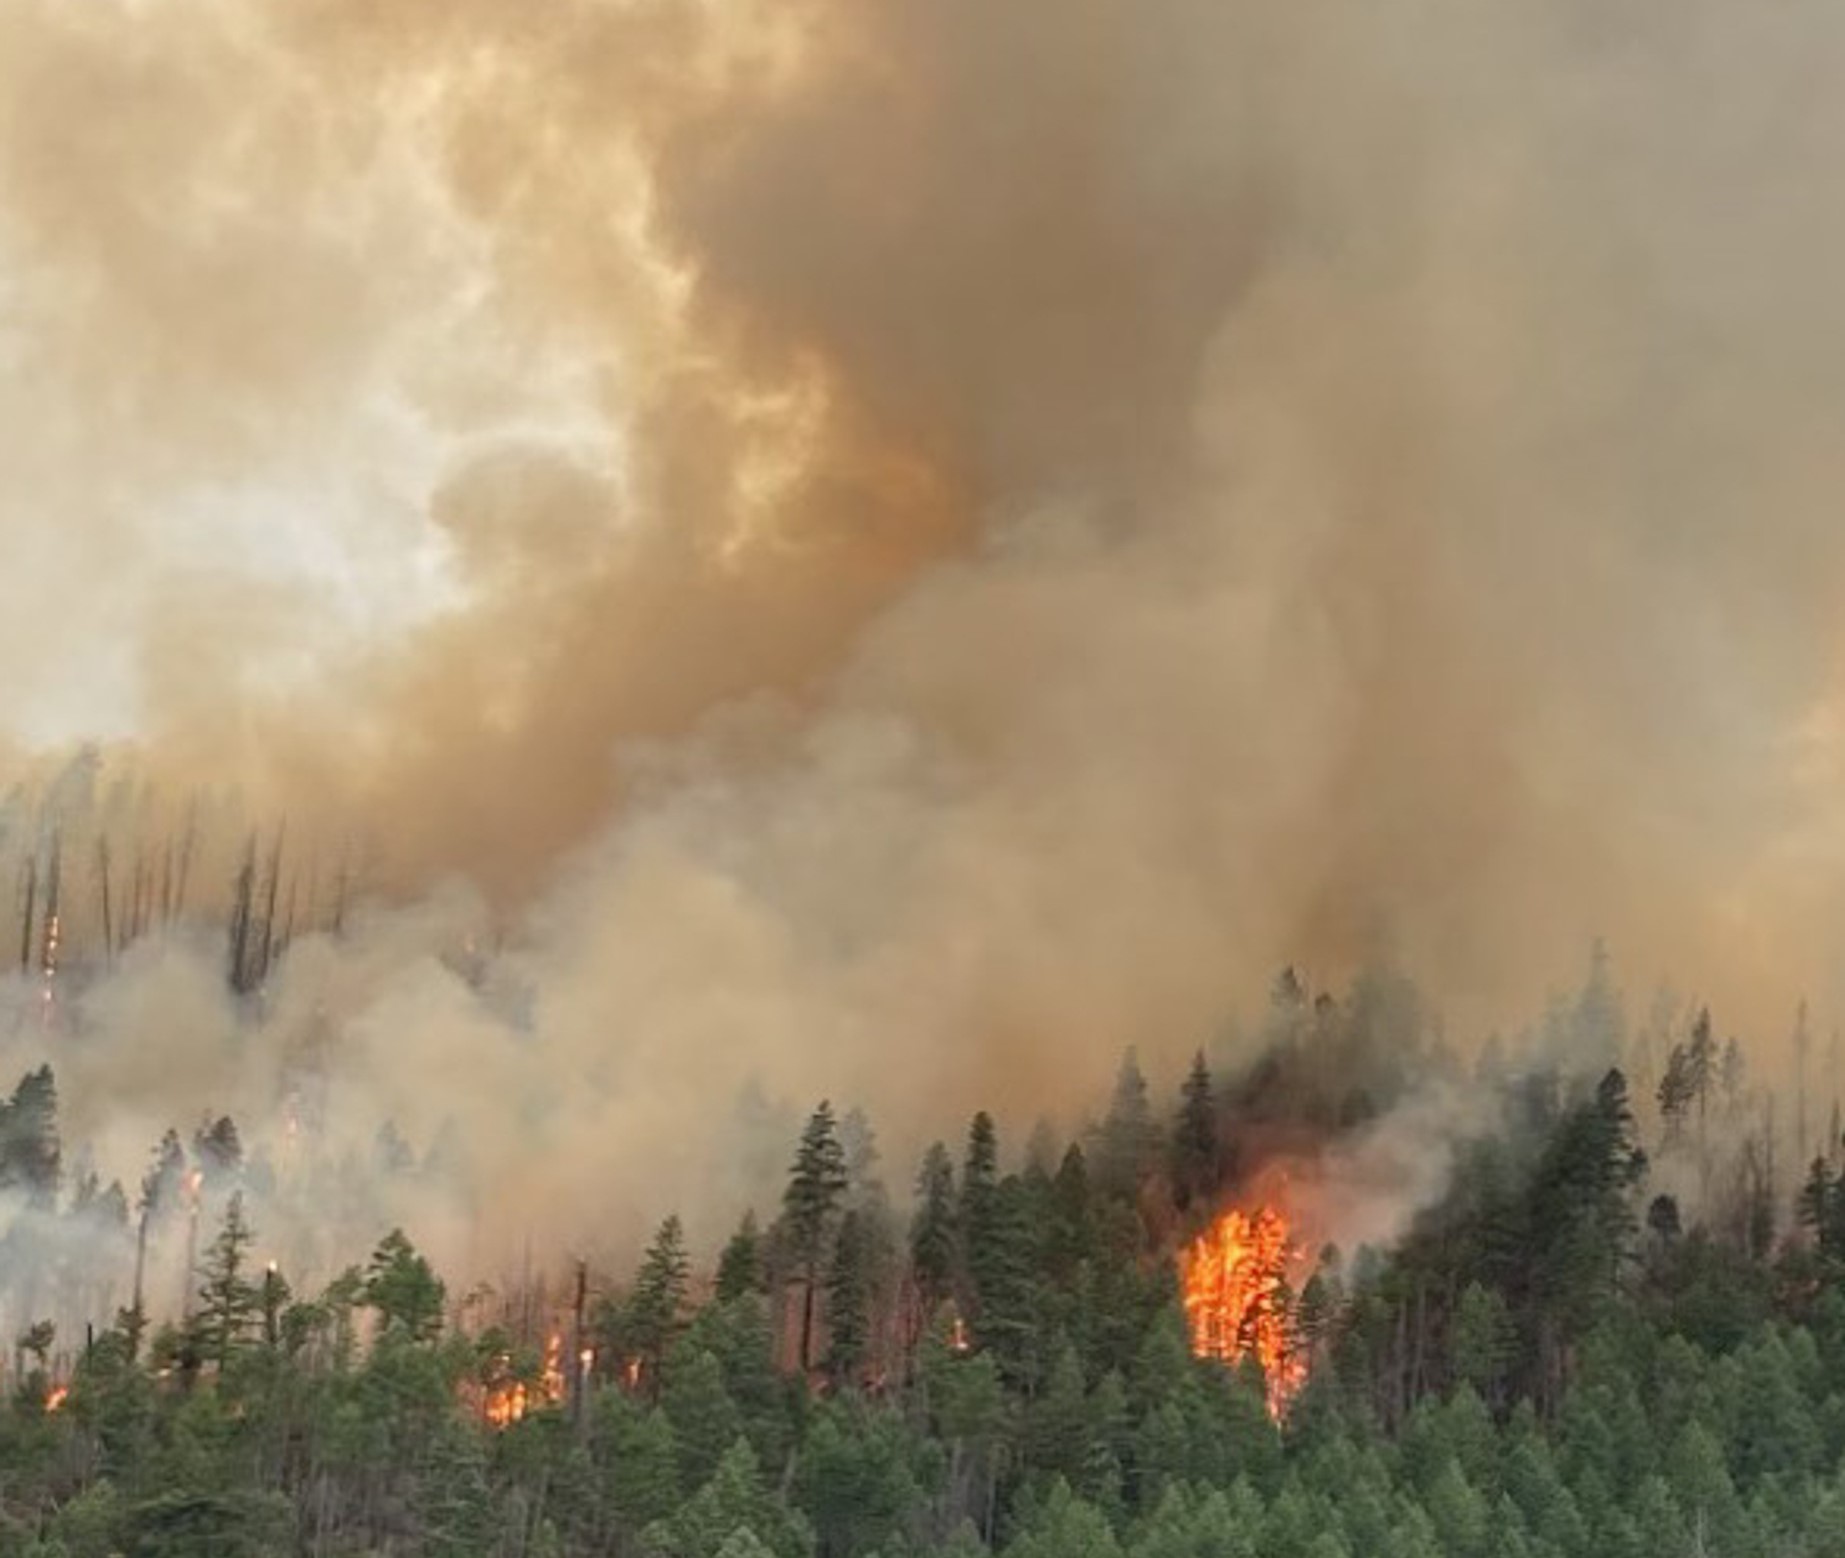 Klamath Basin News, viernes 18 de agosto – Temp 92 hoy, 93 el sábado; Persisten las malas condiciones del aire mientras los incendios forestales cubren el estado de Oregón